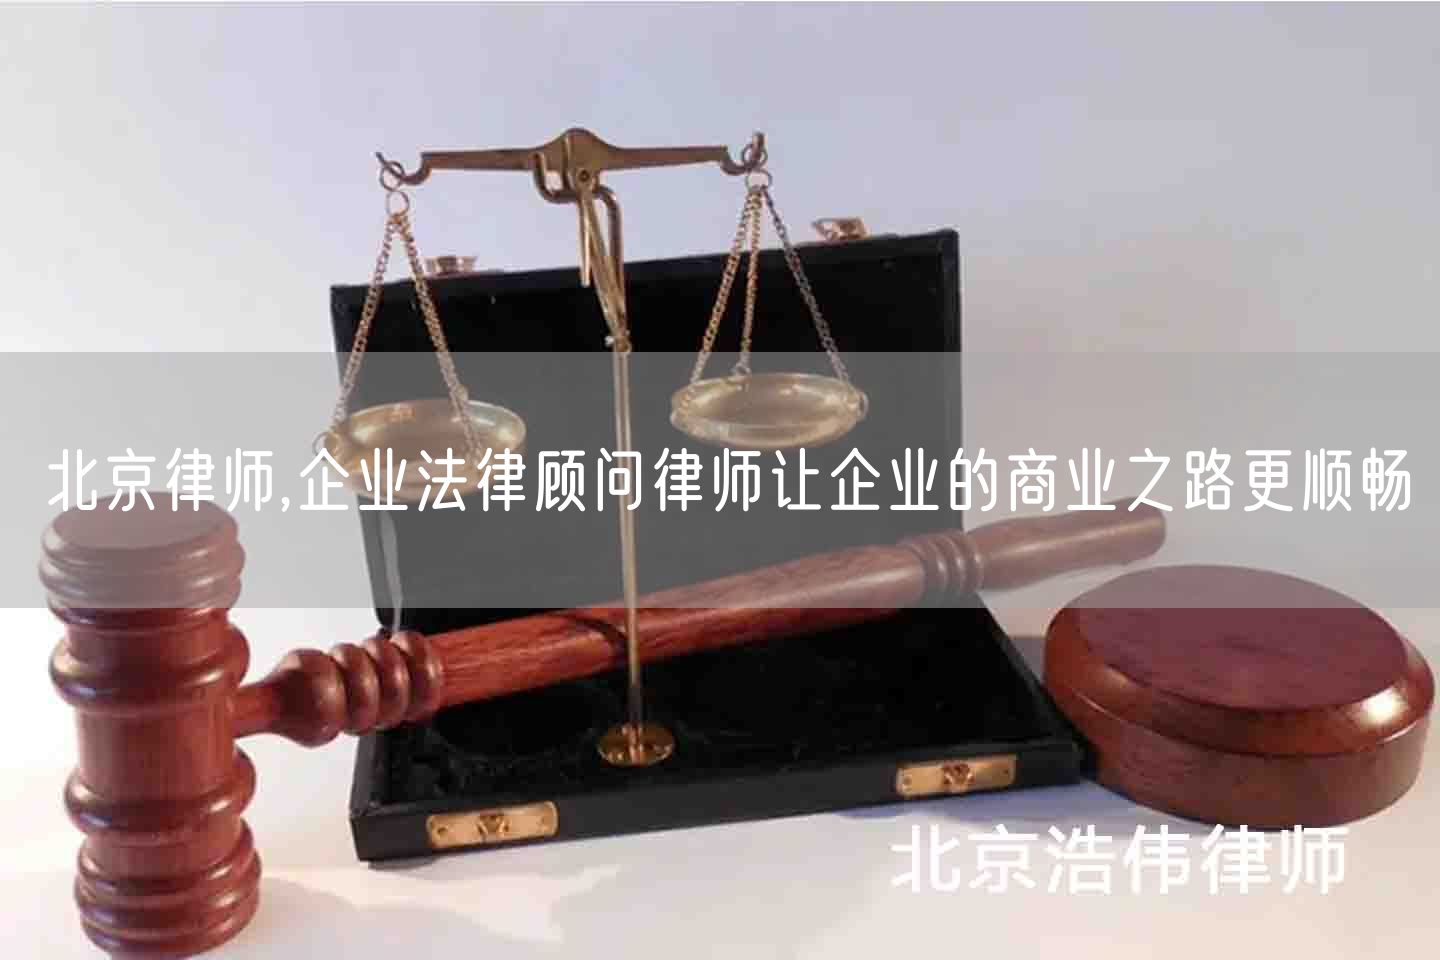 北京律师,企业法律顾问律师让企业的商业之路更顺畅